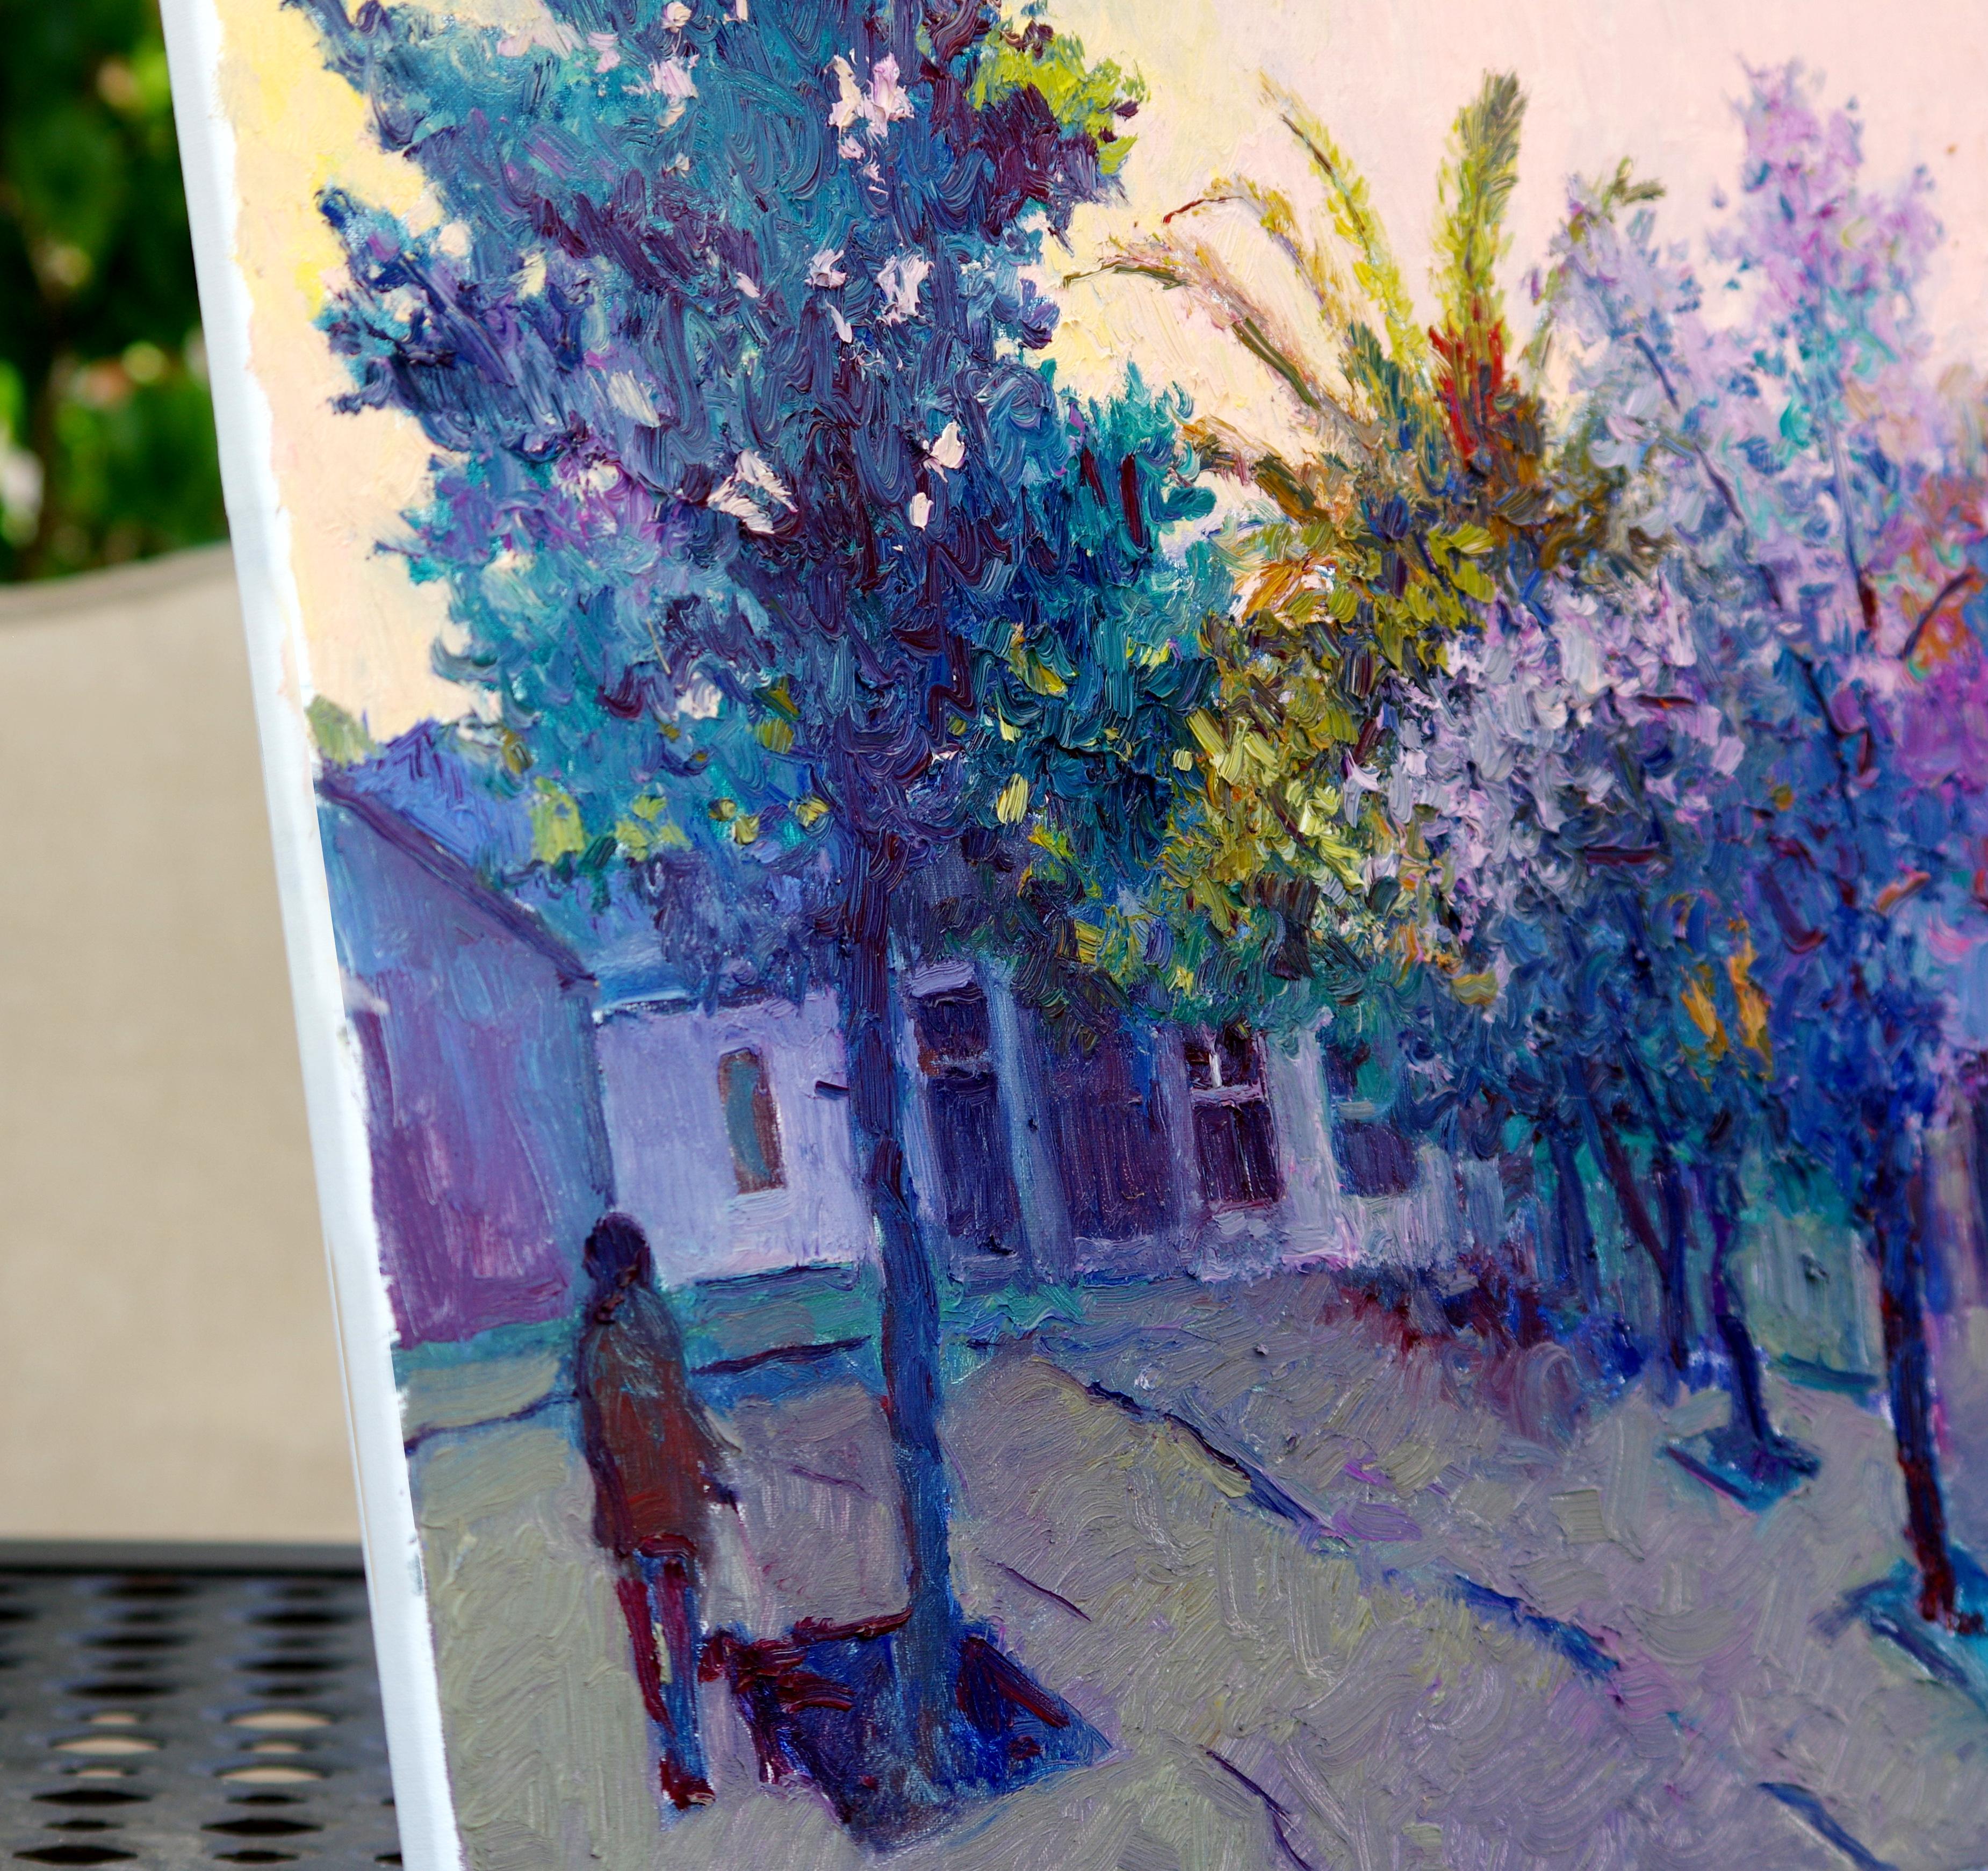 <p>Kommentare des Künstlers<br /> Die letzten Momente des Tageslichts in einer Wohngegend. Frau geht mit ihrem Hund spazieren. Kühles Blau und Violett in der Landschaft ruhen auf einem gedämpften pfirsichfarbenen Himmel. Expressionistische